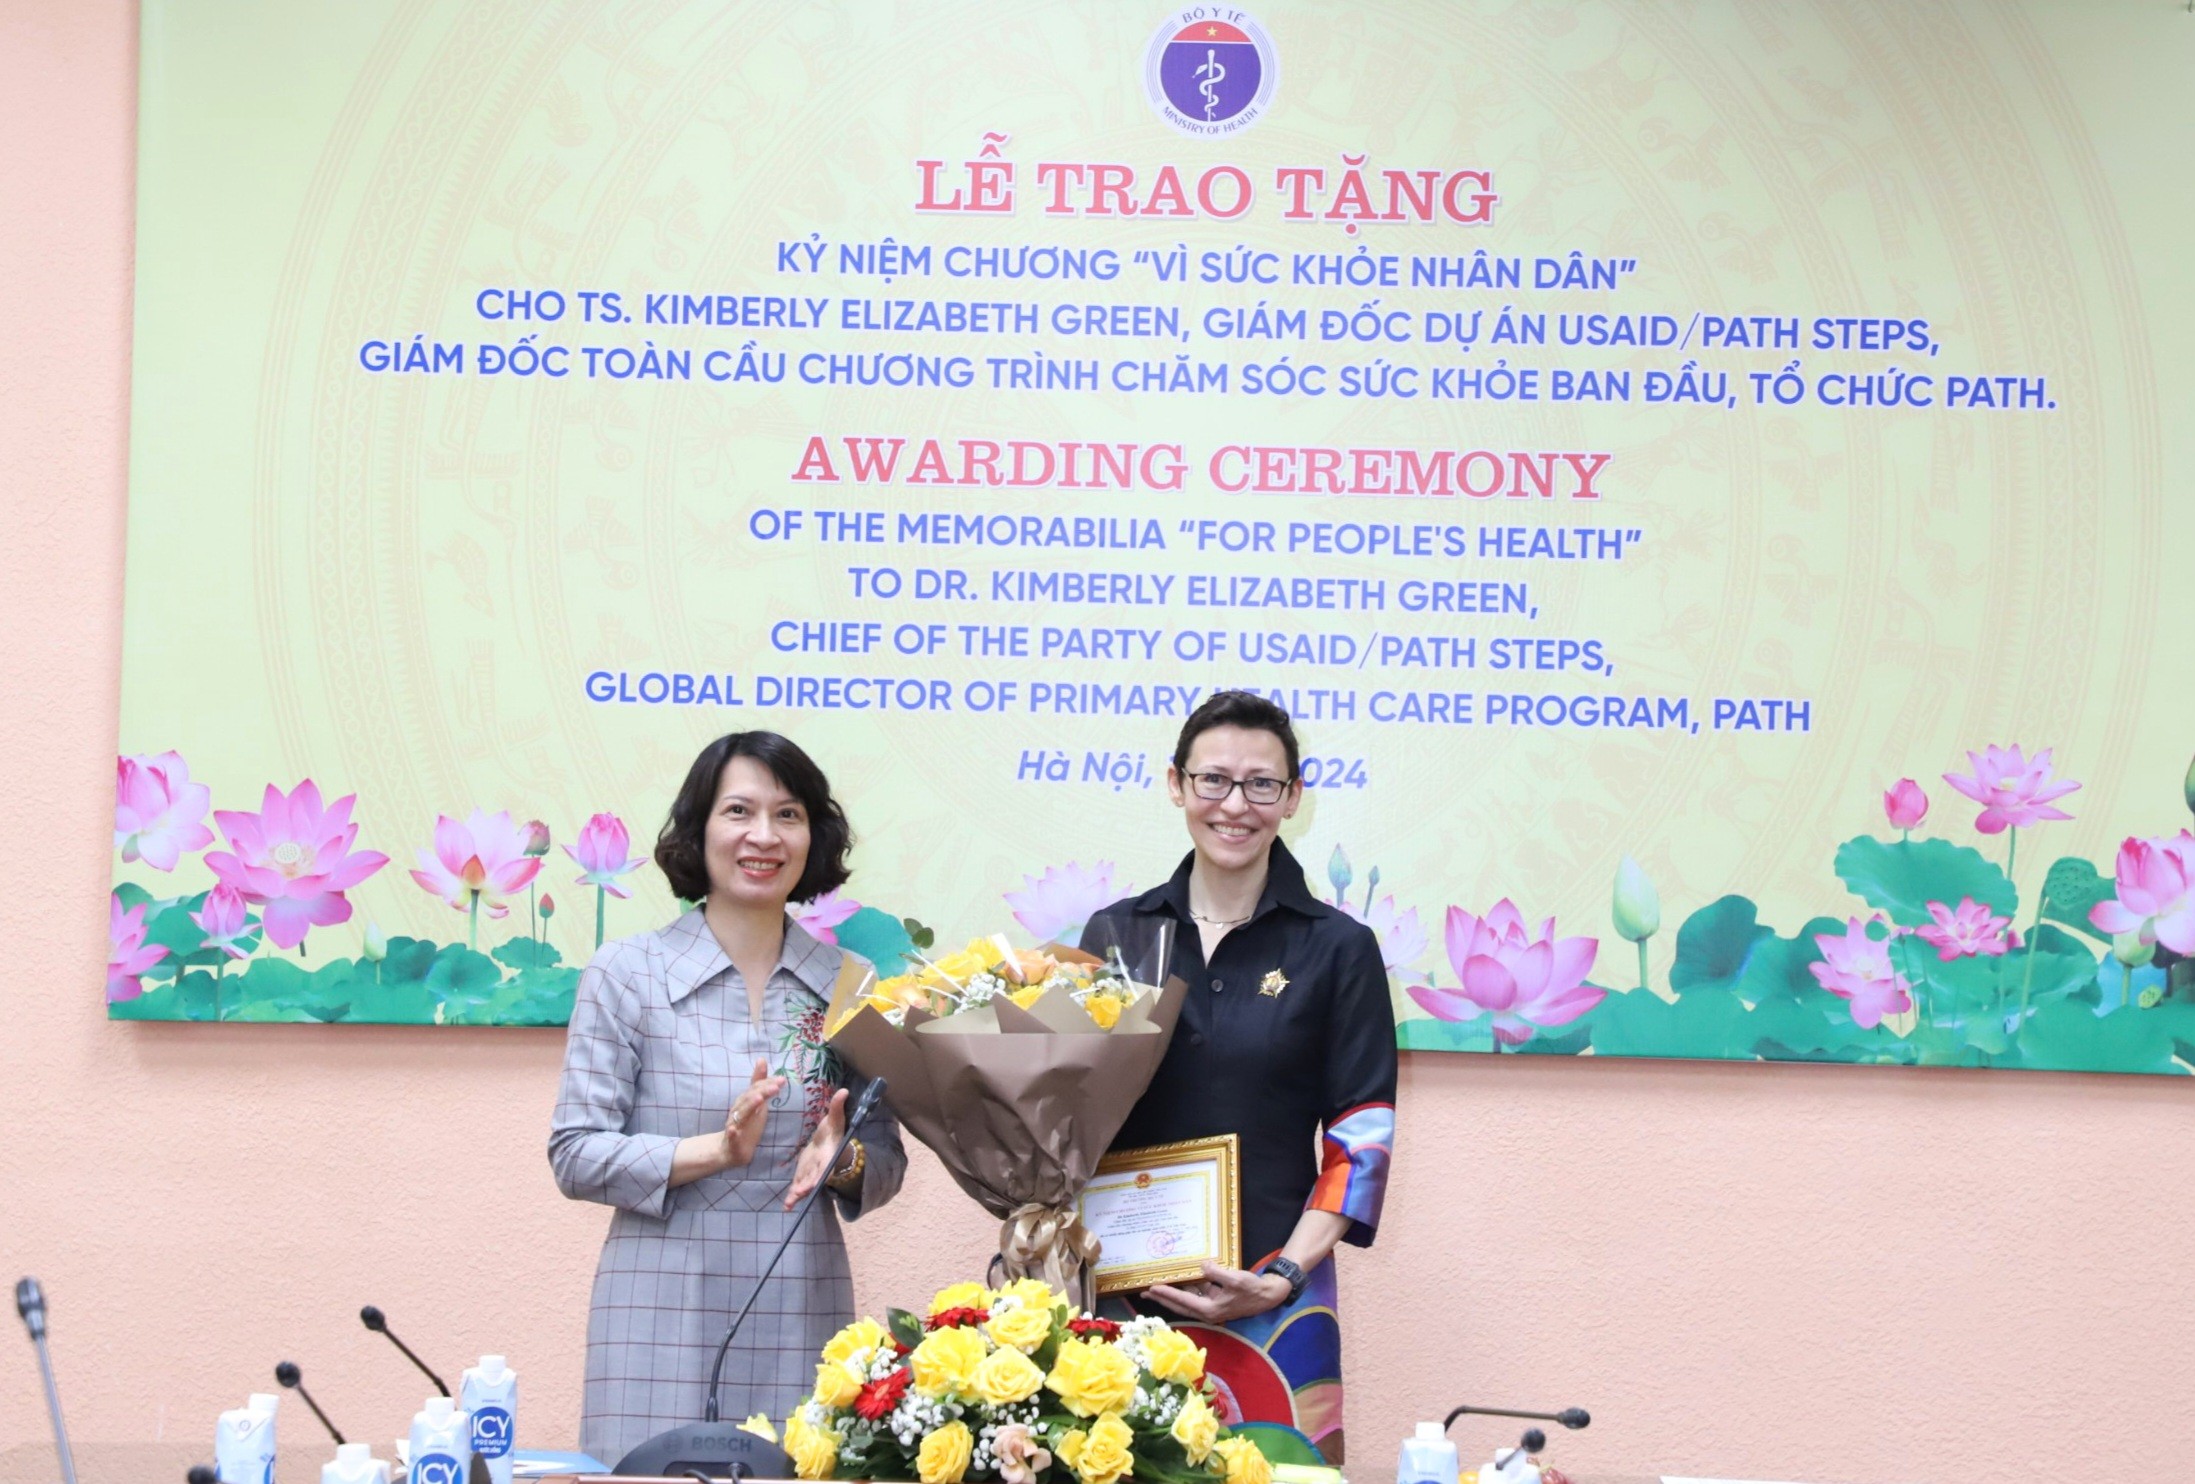 Nguyễn Thị Liên Hương đã trao tặng Kỷ niệm chương “Vì Sức khỏe nhân dân” cho bà Kimberly Elizabeth Green